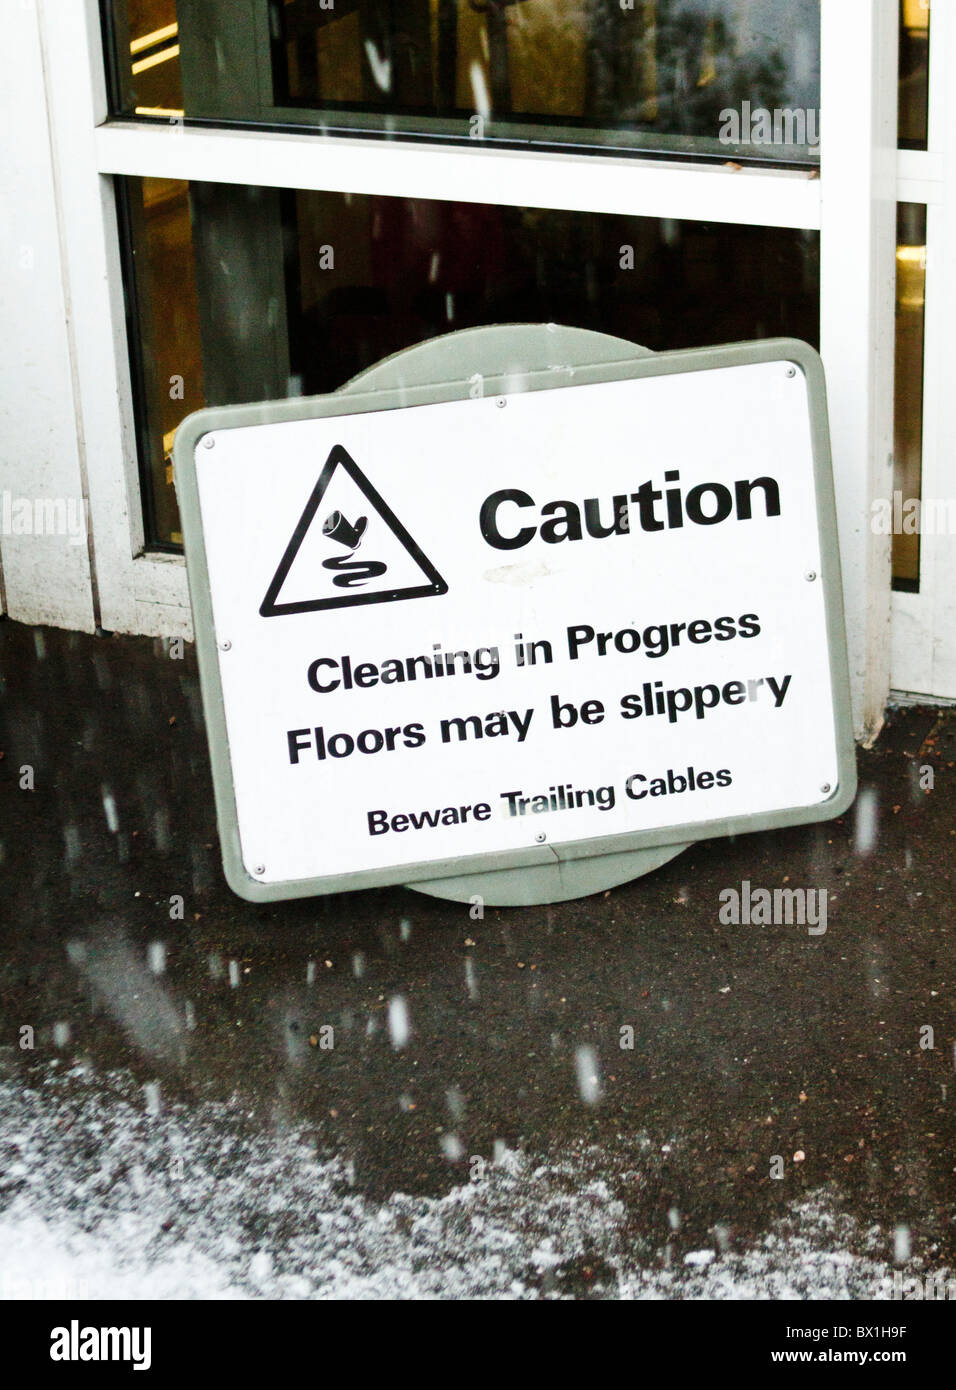 La nieve caída en torno a un signo de advertencia de suelos resbaladizos debido a la limpieza Foto de stock